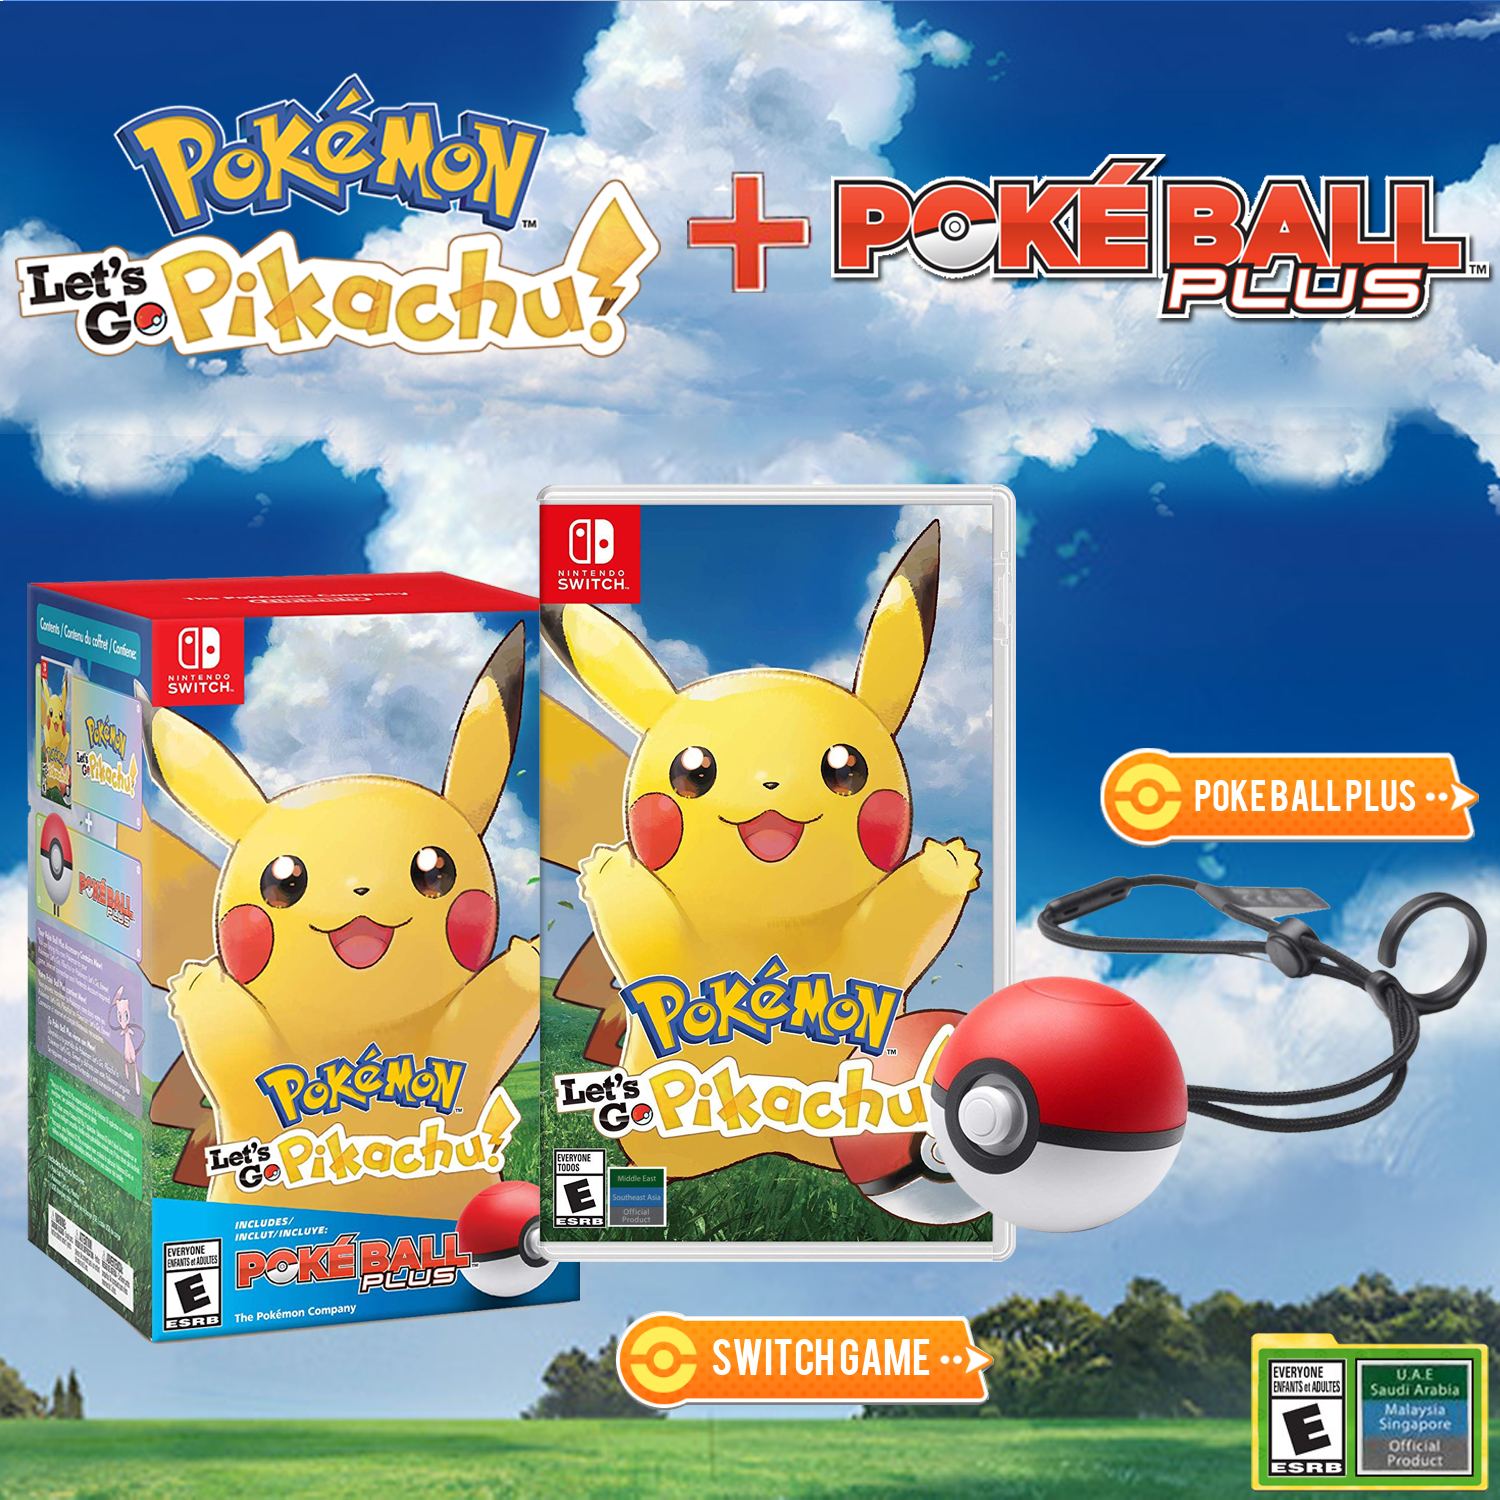 Pokemon: Let's Go, Pikachu! Poke Ball Pack for Nintendo Switch